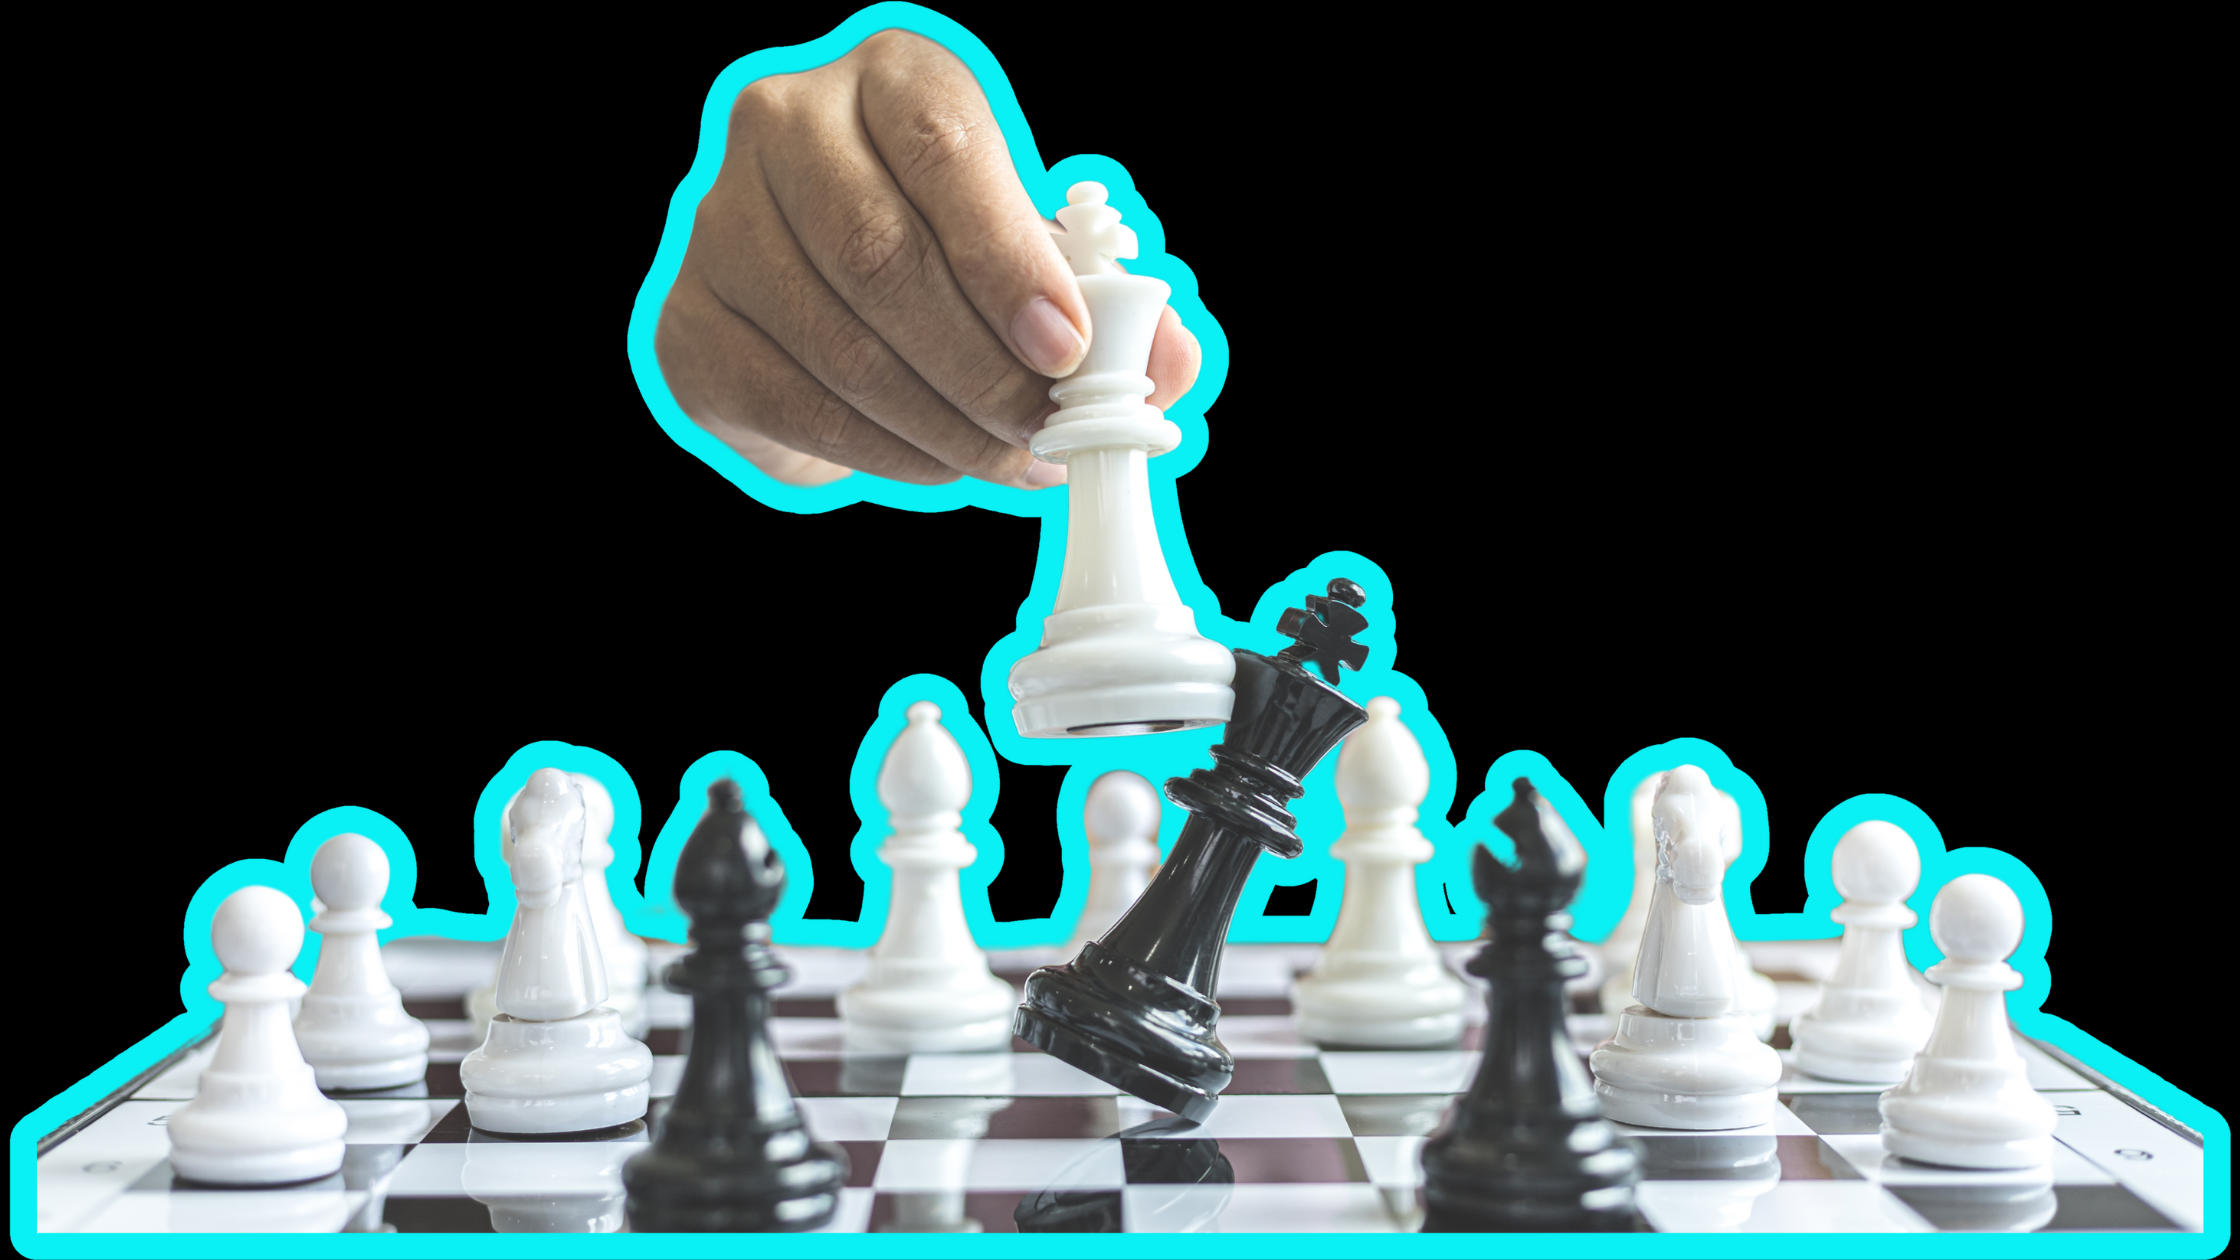 International Chess Day – Chess And Recruitment’s Similarities